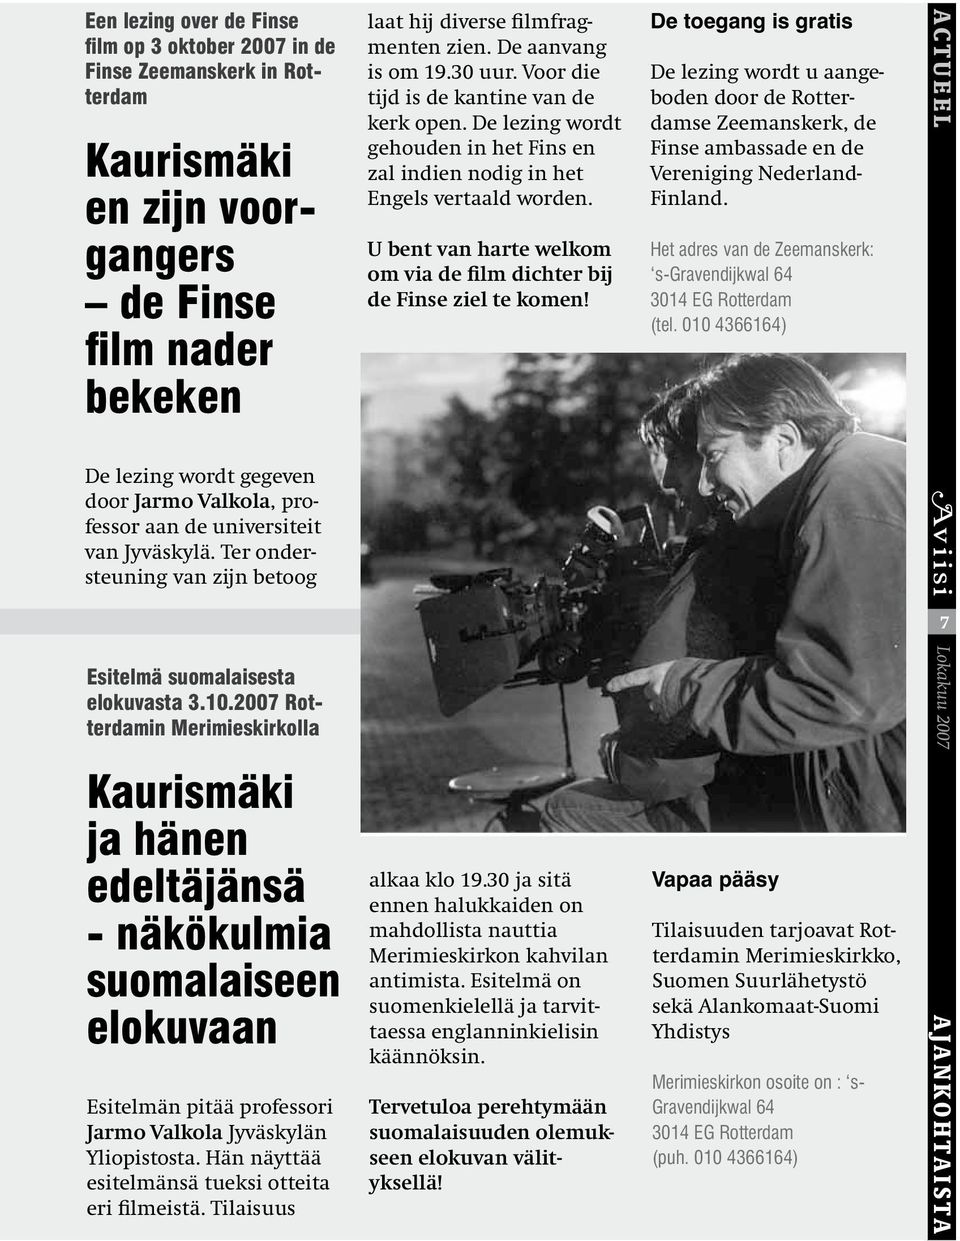 2007 Rotterdamin Merimieskirkolla Kaurismäki ja hänen edeltäjänsä - näkökulmia suomalaiseen elokuvaan Esitelmän pitää professori Jarmo Valkola Jyväskylän Yliopistosta.